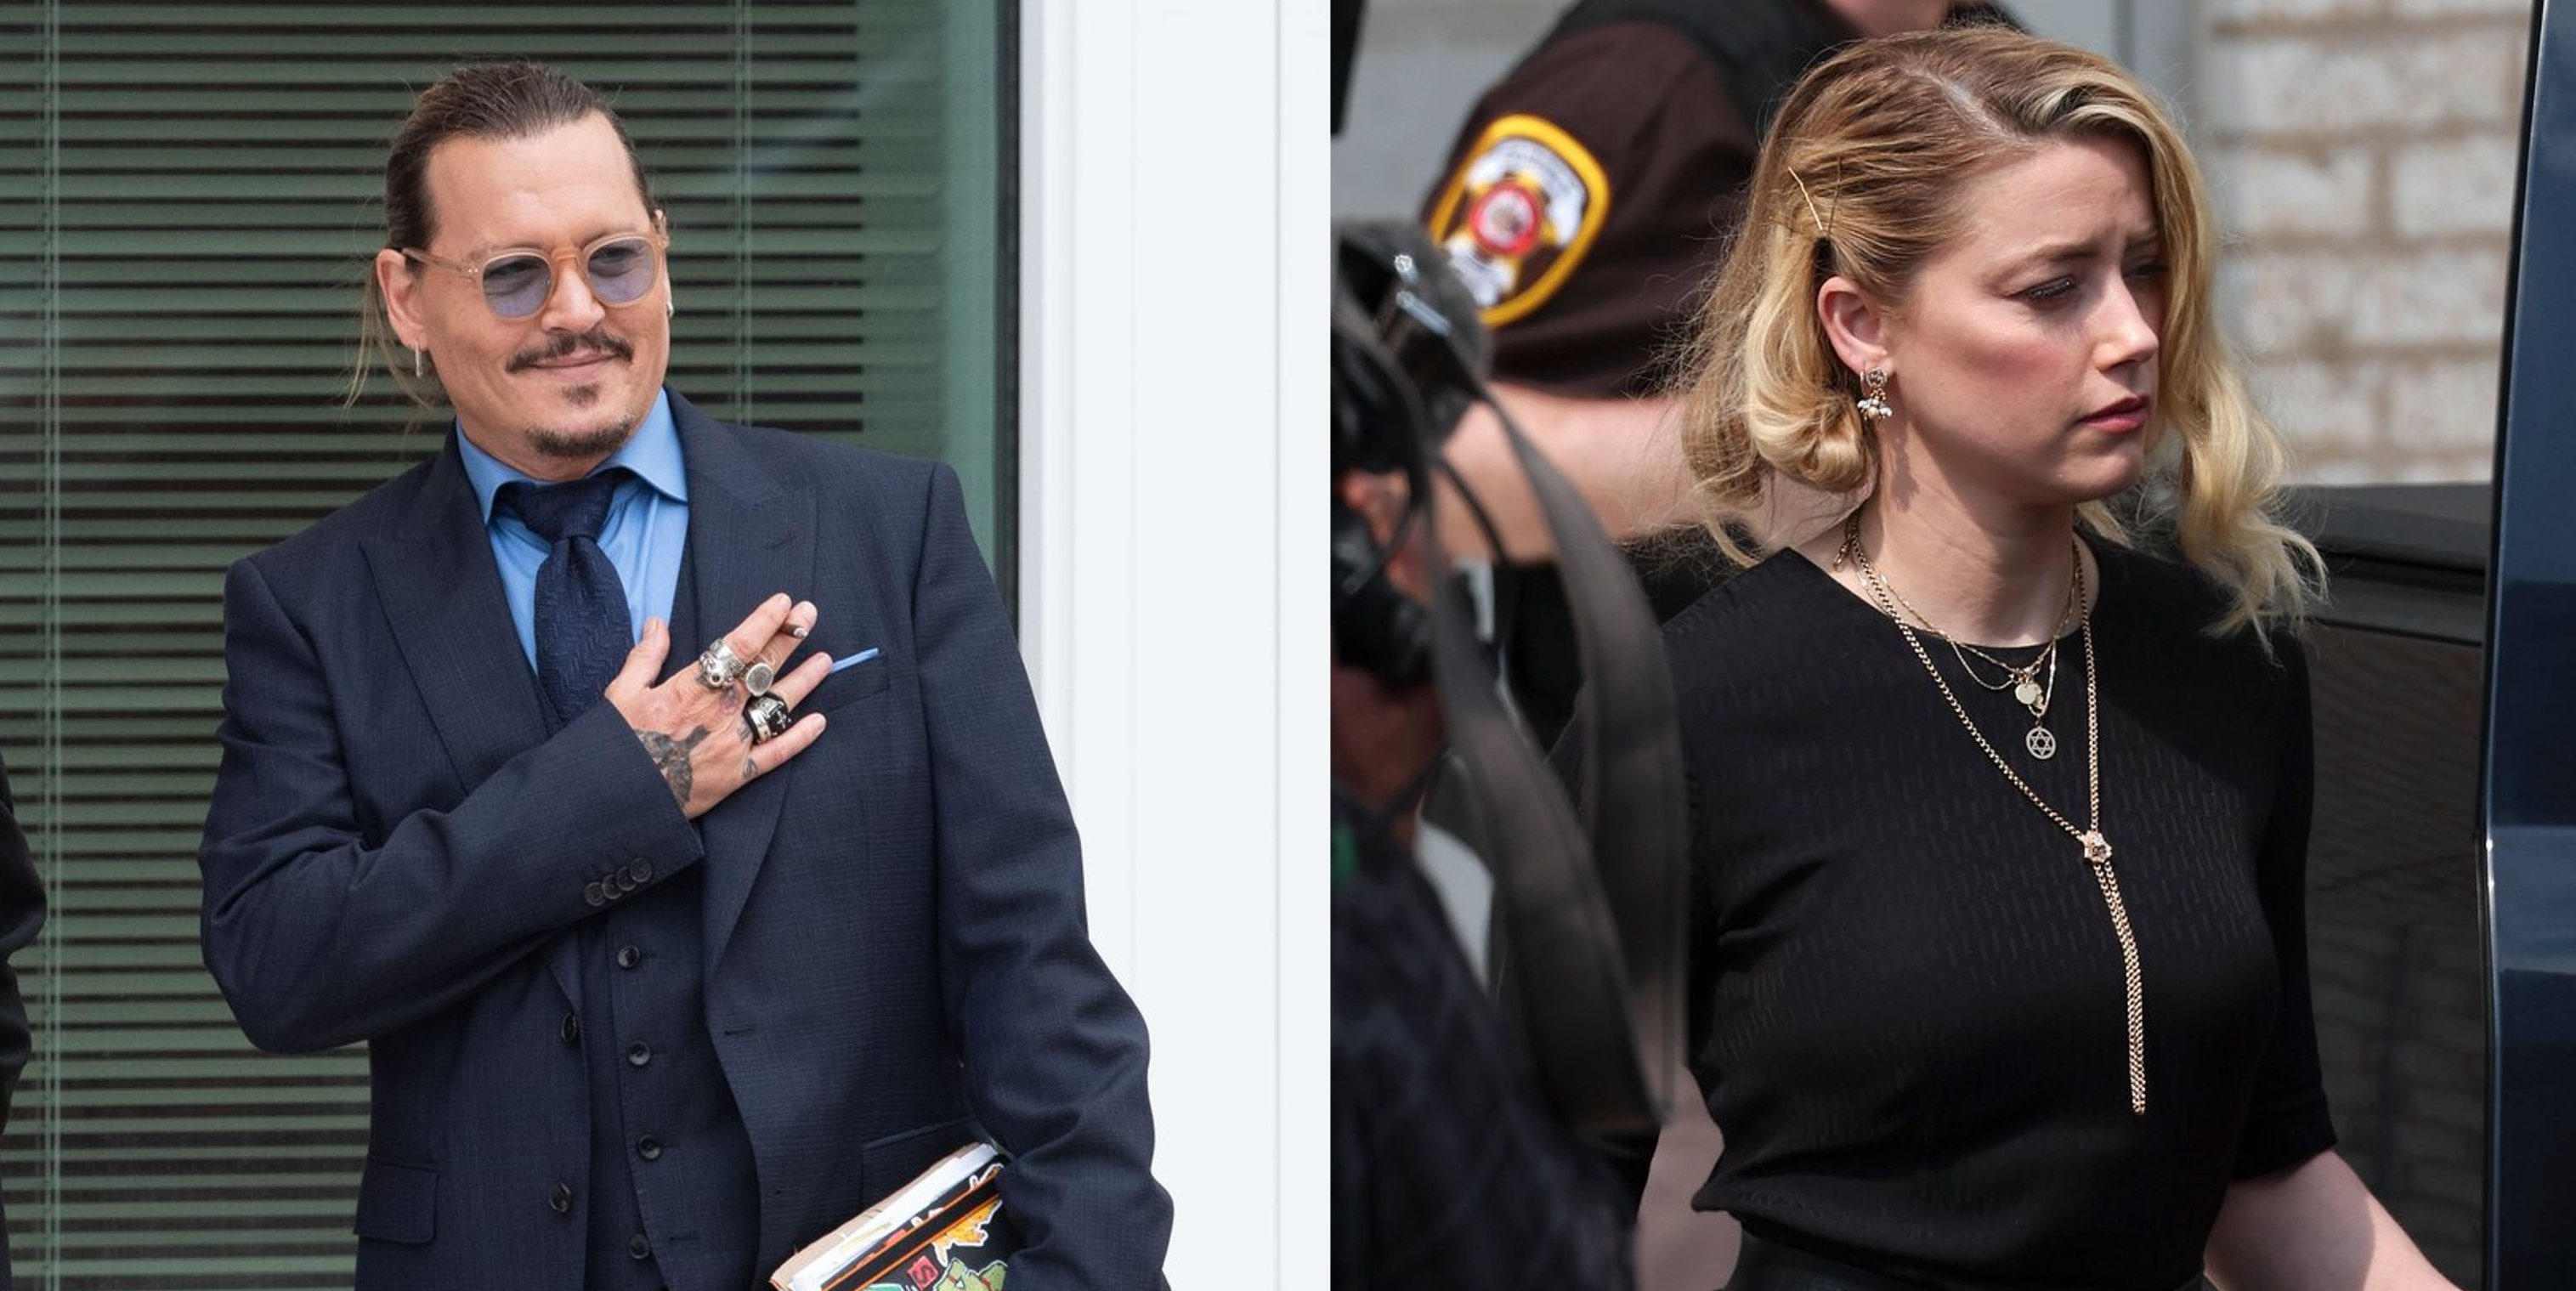 O júri teve de responder a várias perguntas sobre os três excertos dos artigos para deliberar se Johnny Depp e Amber Heard eram culpados